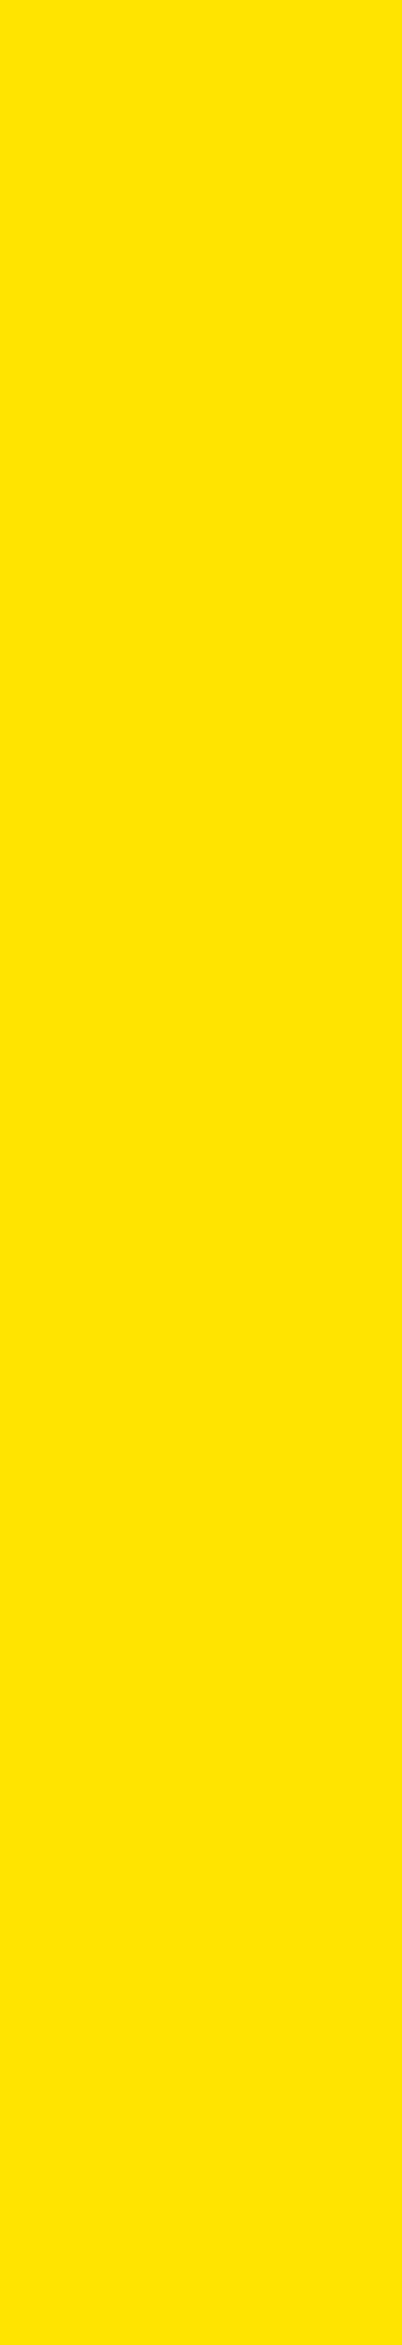 divisione-gialla-slim.jpg